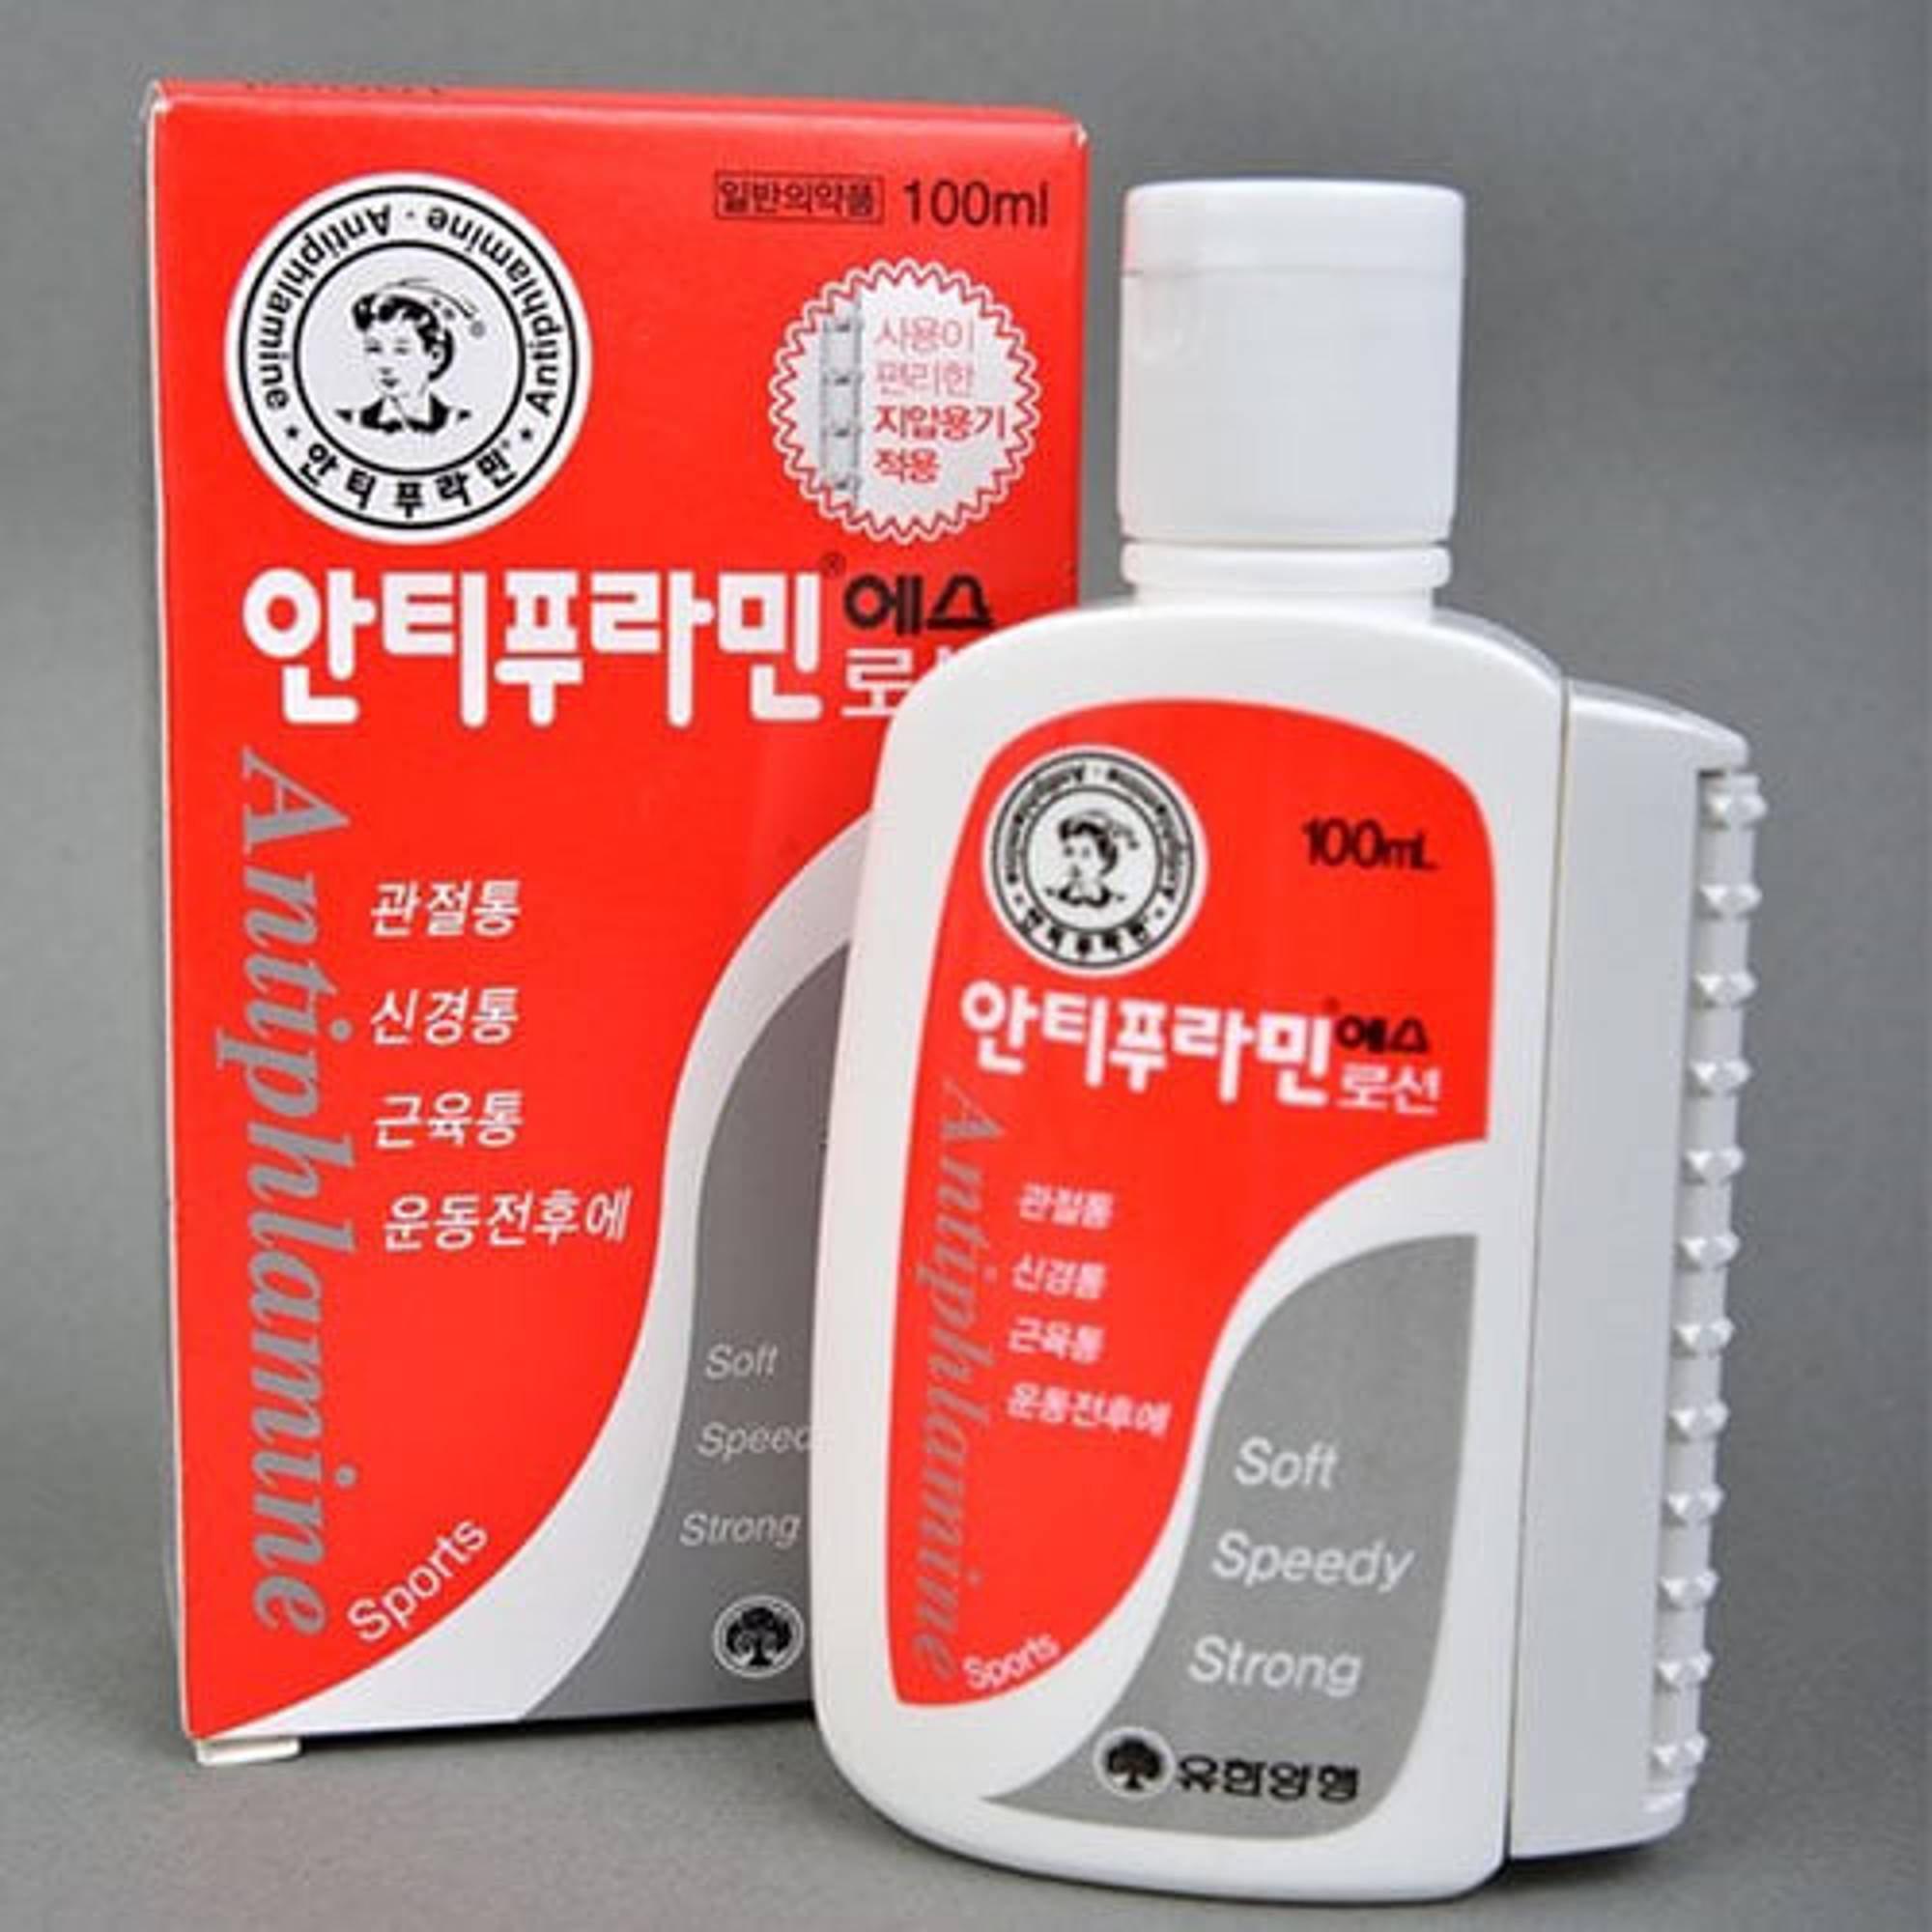 Dầu Nóng Xoa Bóp Hàn Quốc Antiphlamine 100ml nhập khẩu từ Hàn Quốc